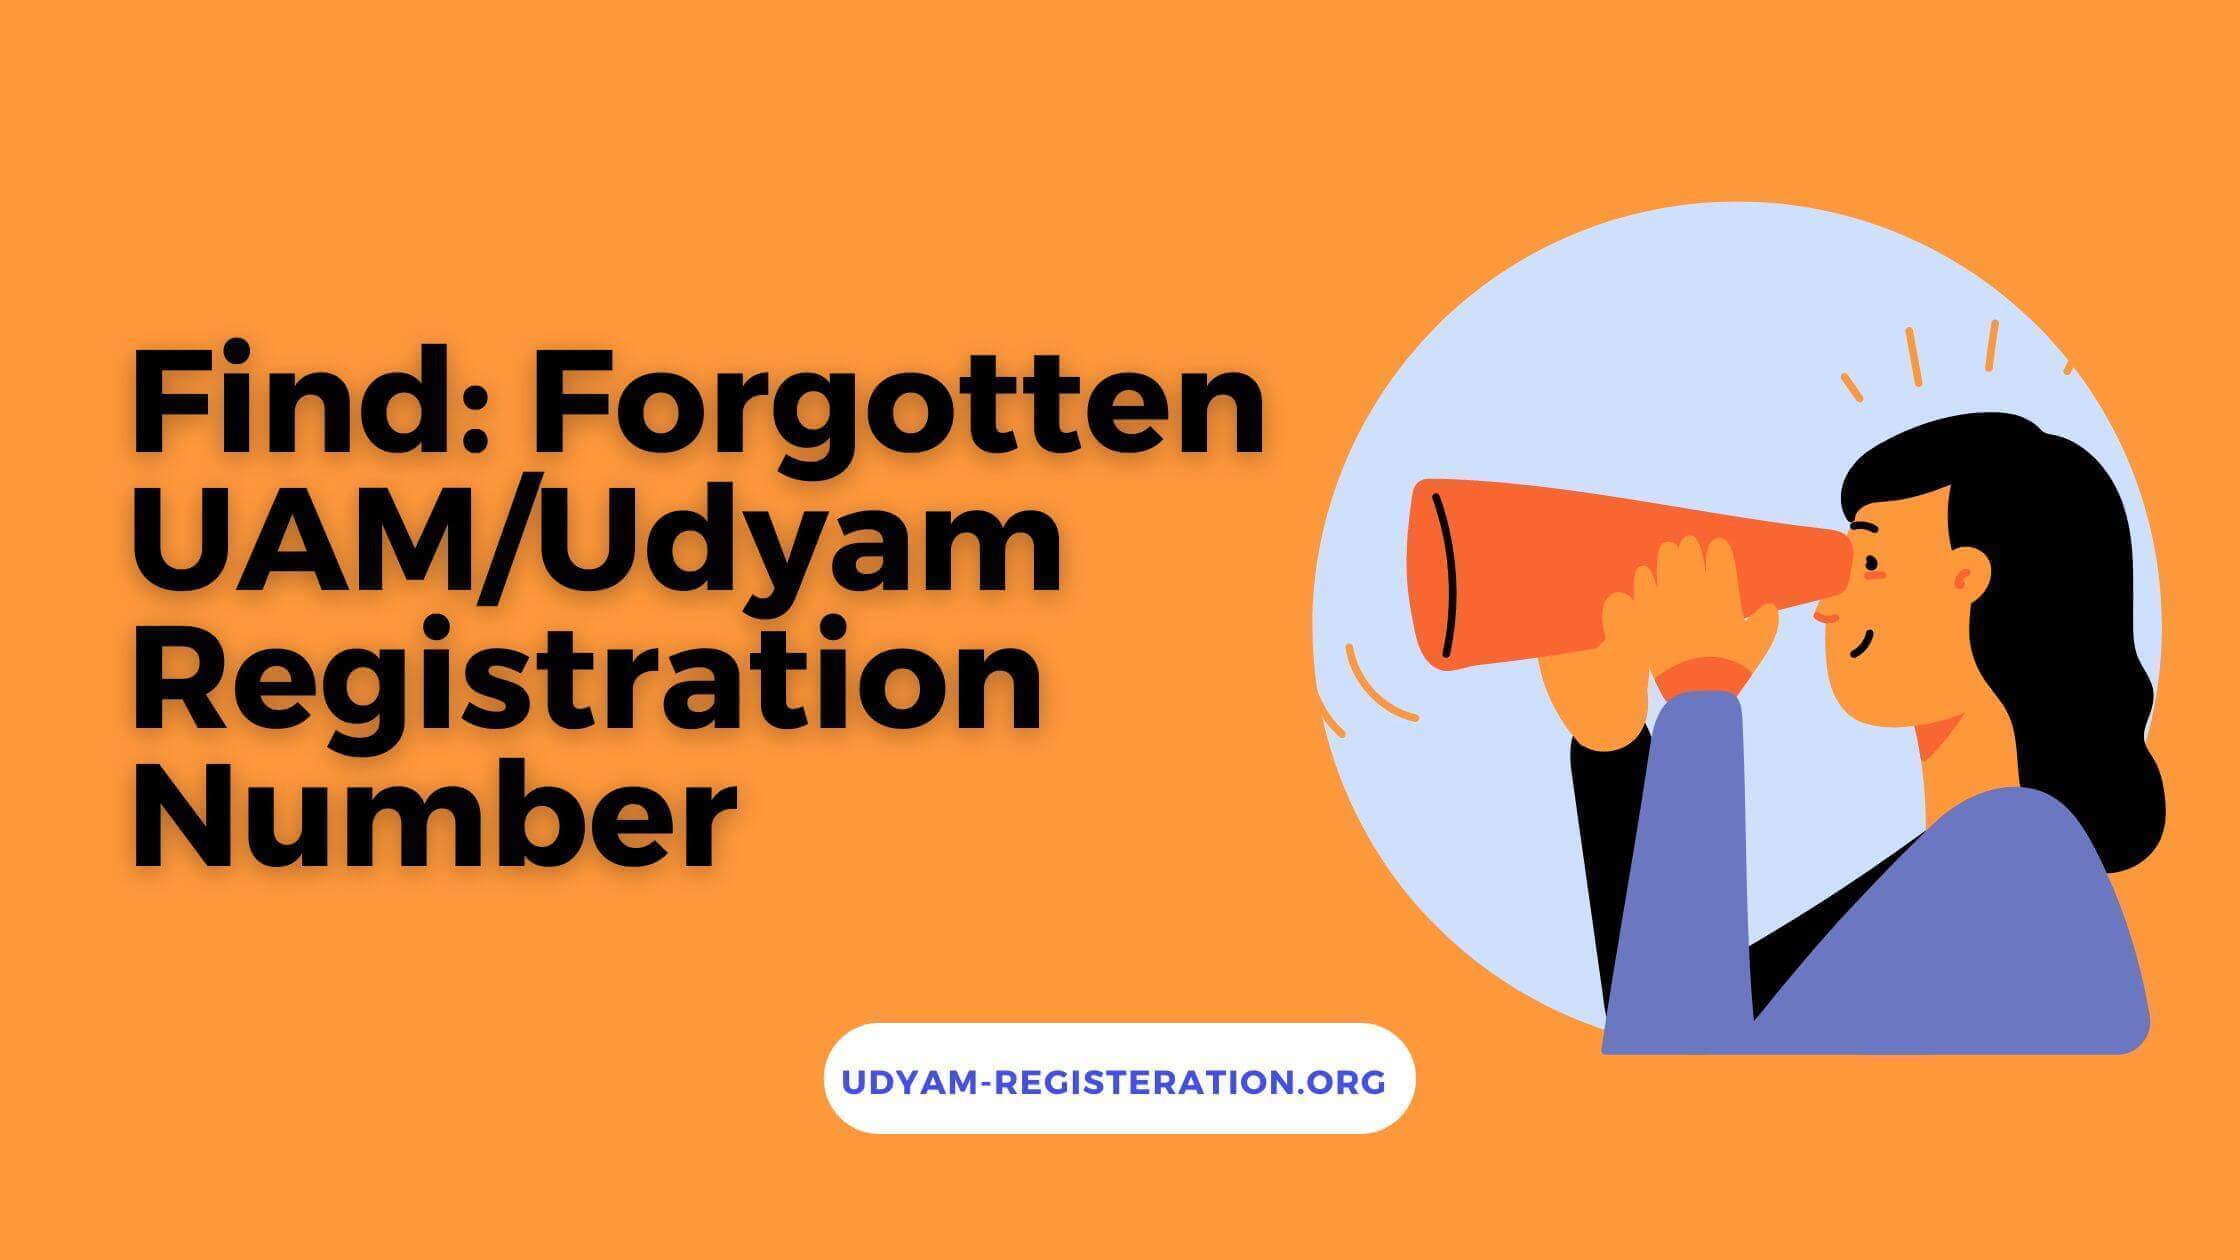 Find: Forgotten UAM/Udyam Registration Number